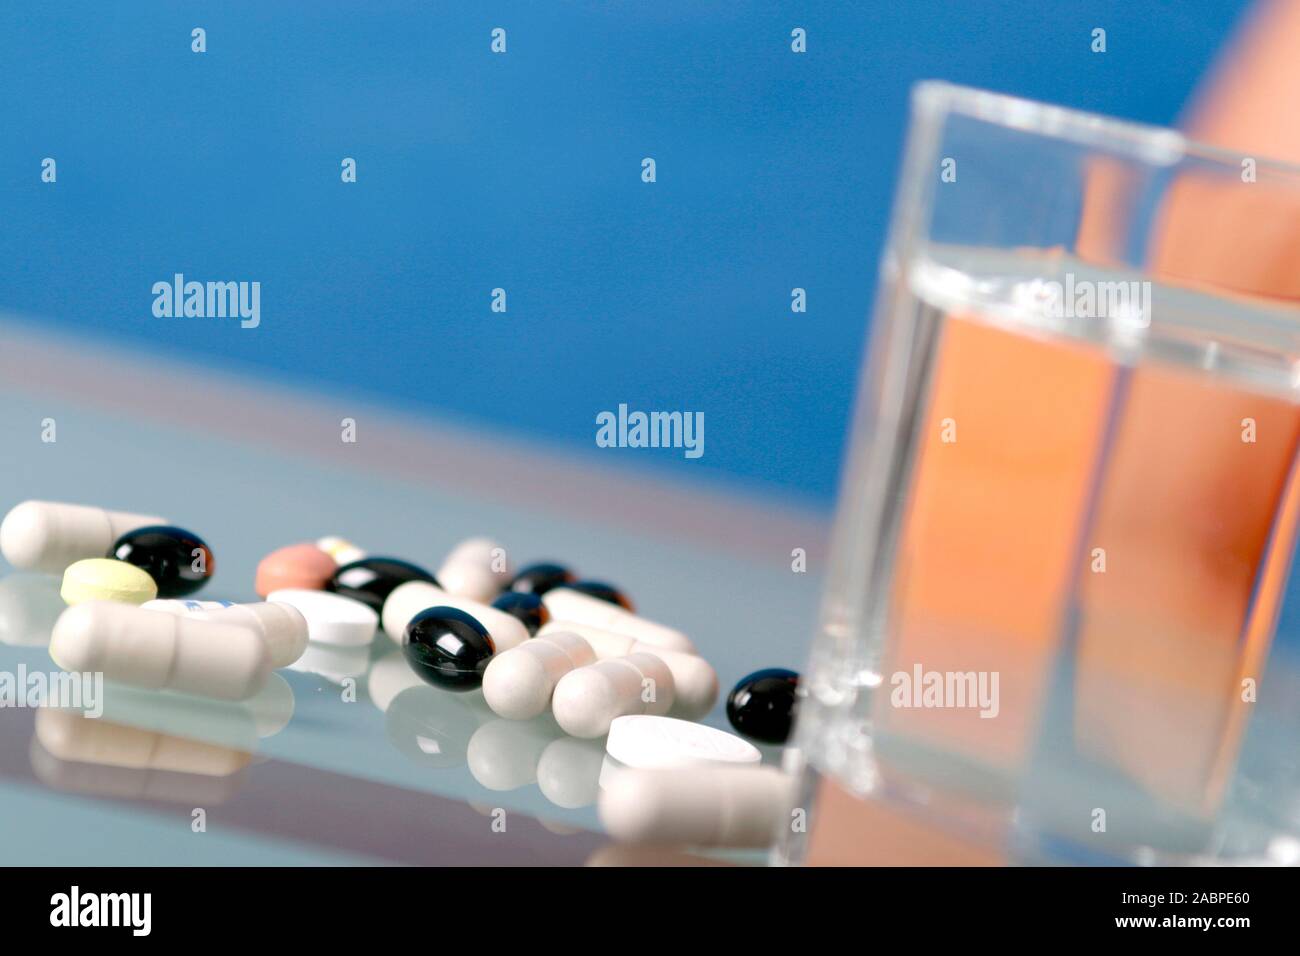 Tabletten - Medizin - Medikamente Foto Stock